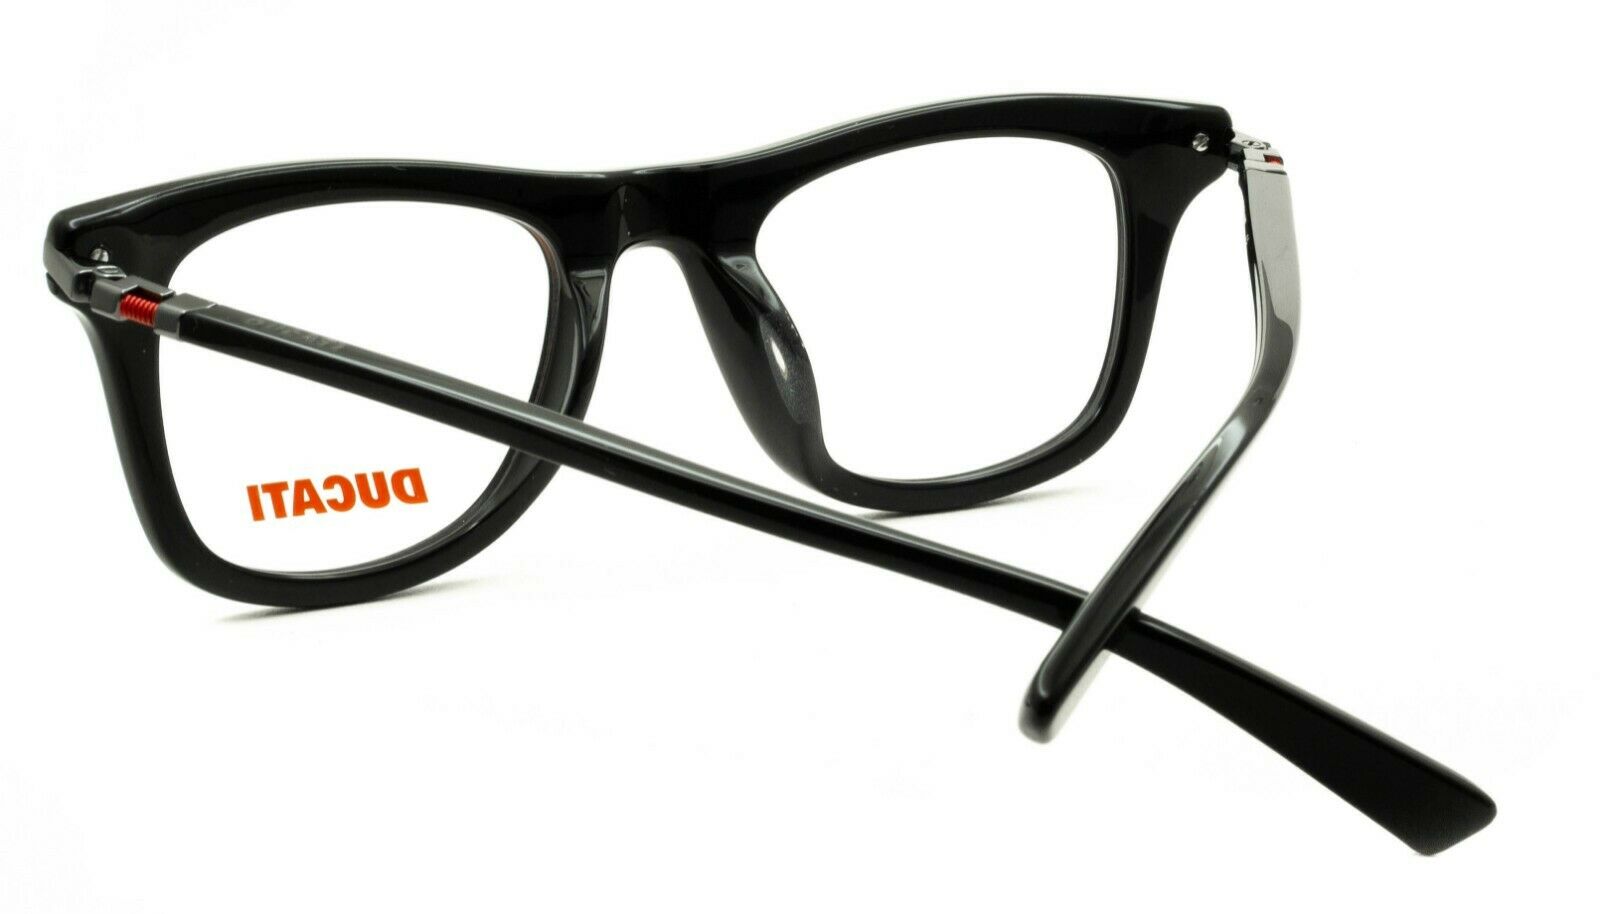 DUCATI DA1008 002 50mm FRAMES Glasses RX Optical Eyewear Eyeglasses BNIB - New